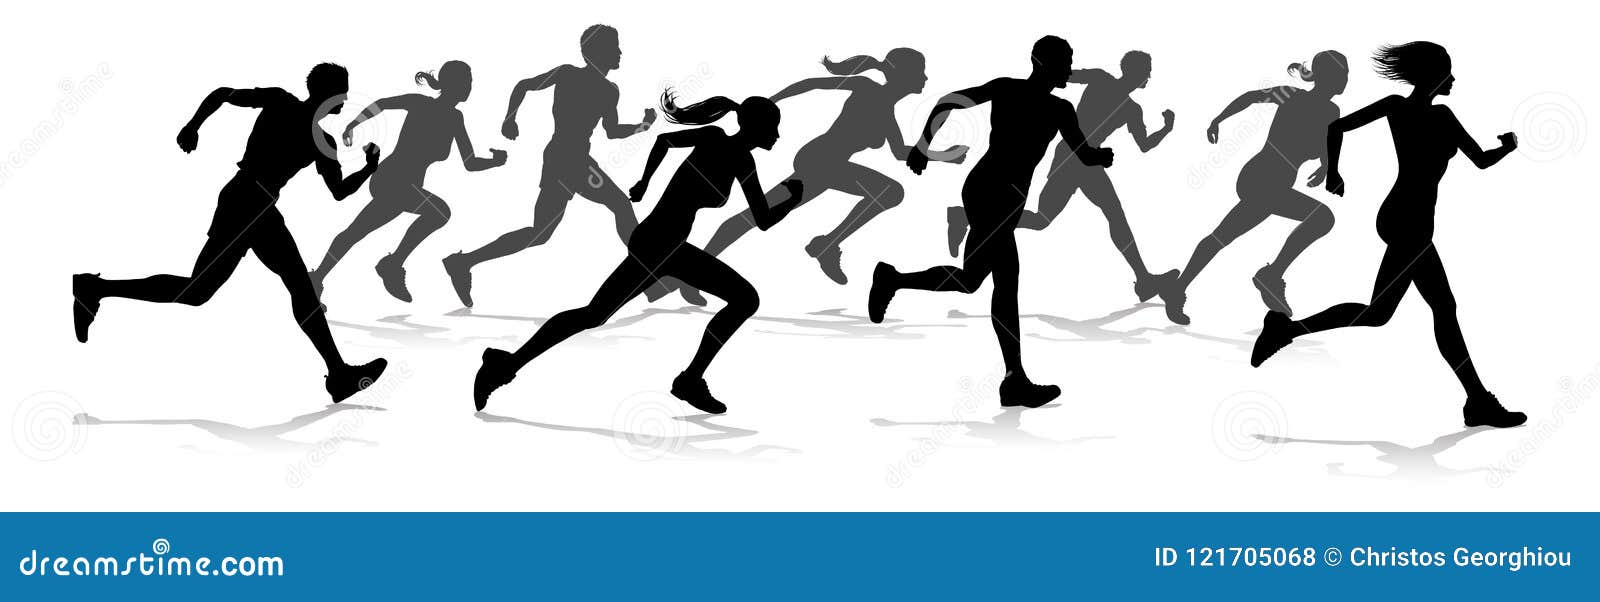 Biegacze Ścigają się zawody atletyczni sylwetki. Sylwetka biegacze w biegowym zawody atletyczni wydarzeniu